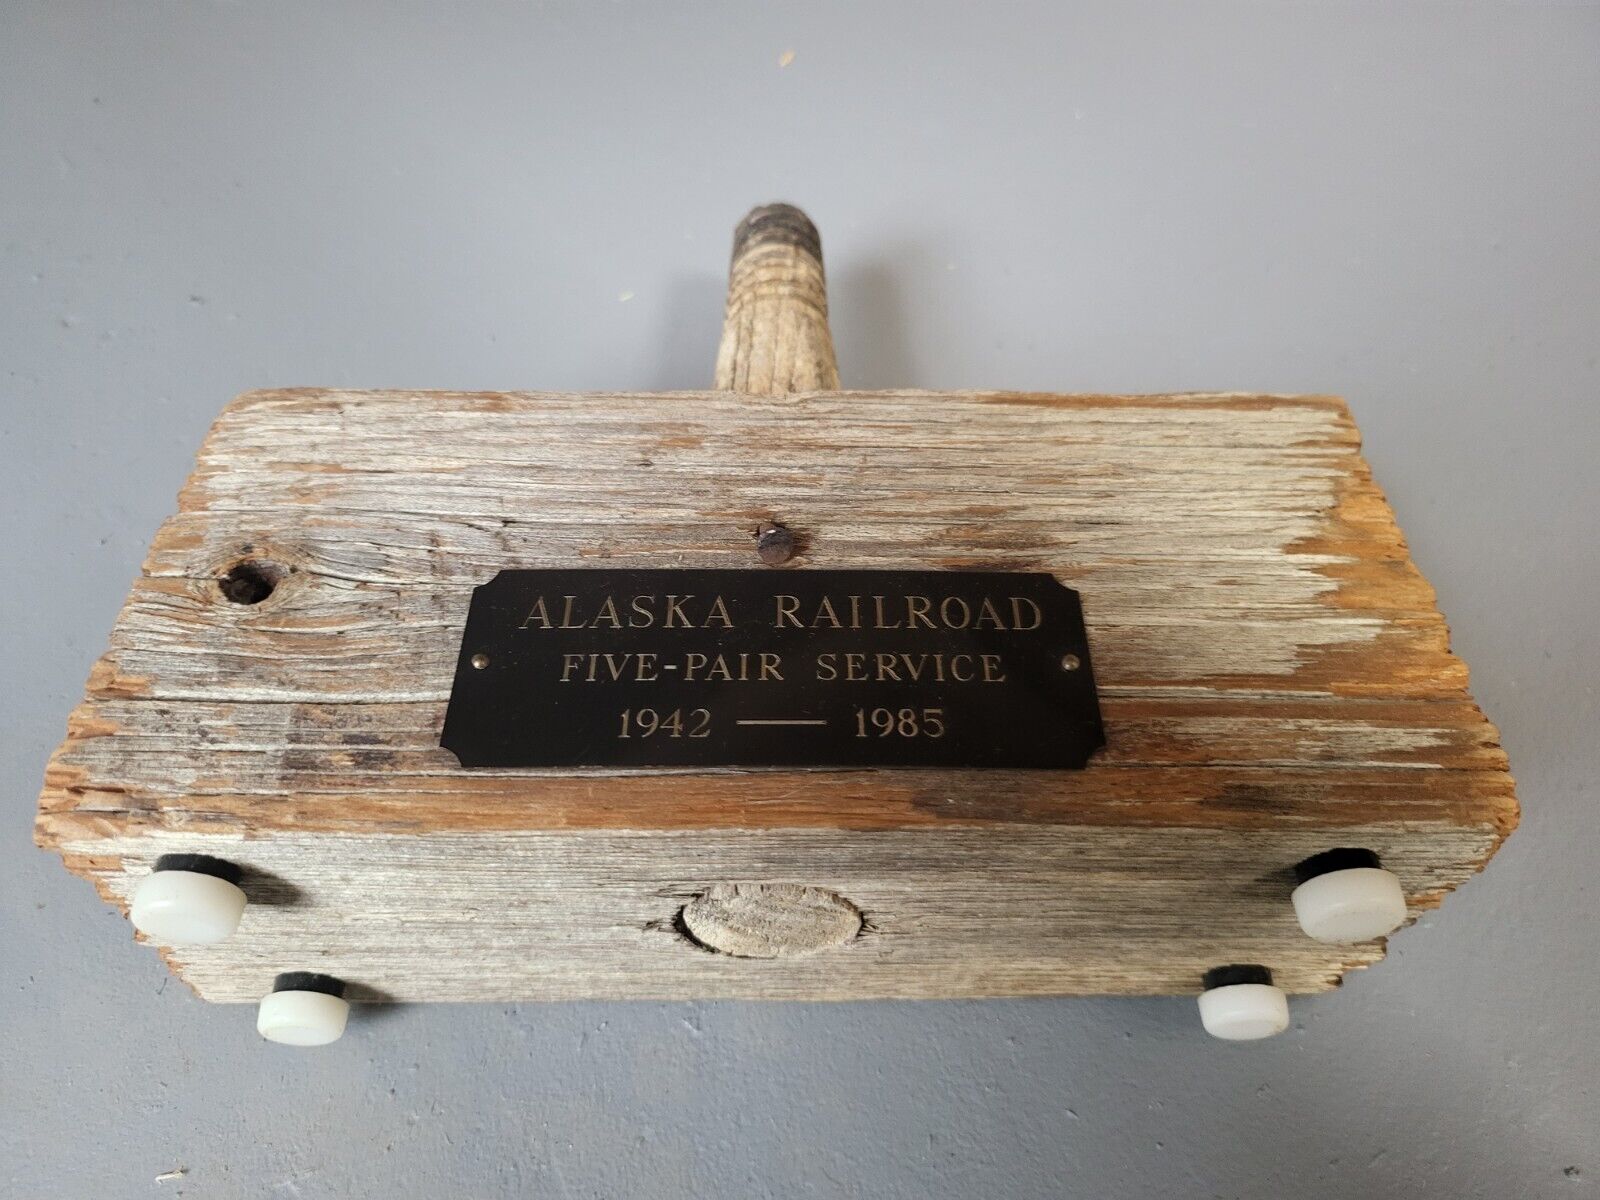 Alaska railroad Five Pair Services 1942-1985 